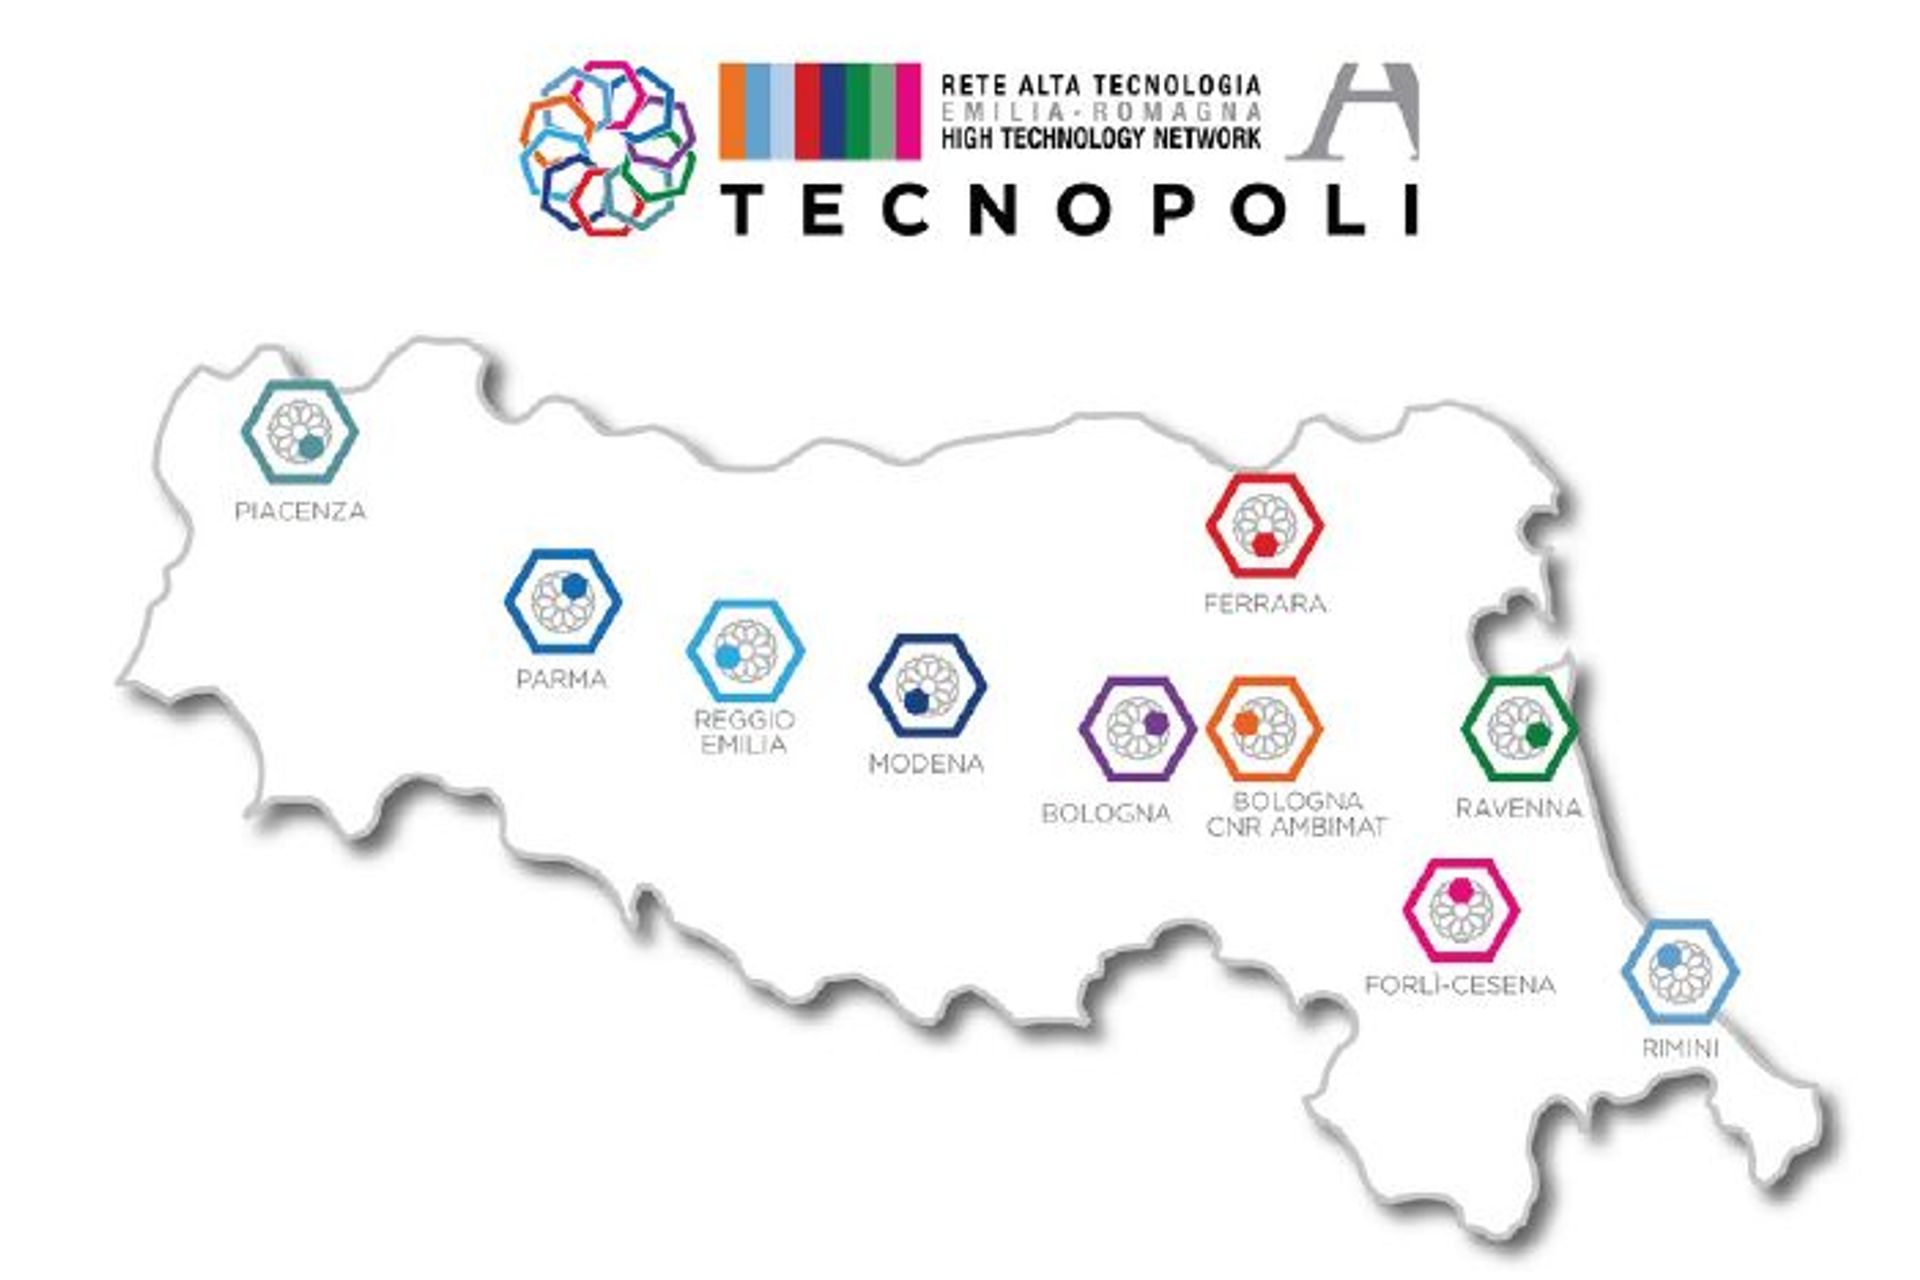 Rețeaua de înaltă tehnologie a regiunii Emilia-Romagna